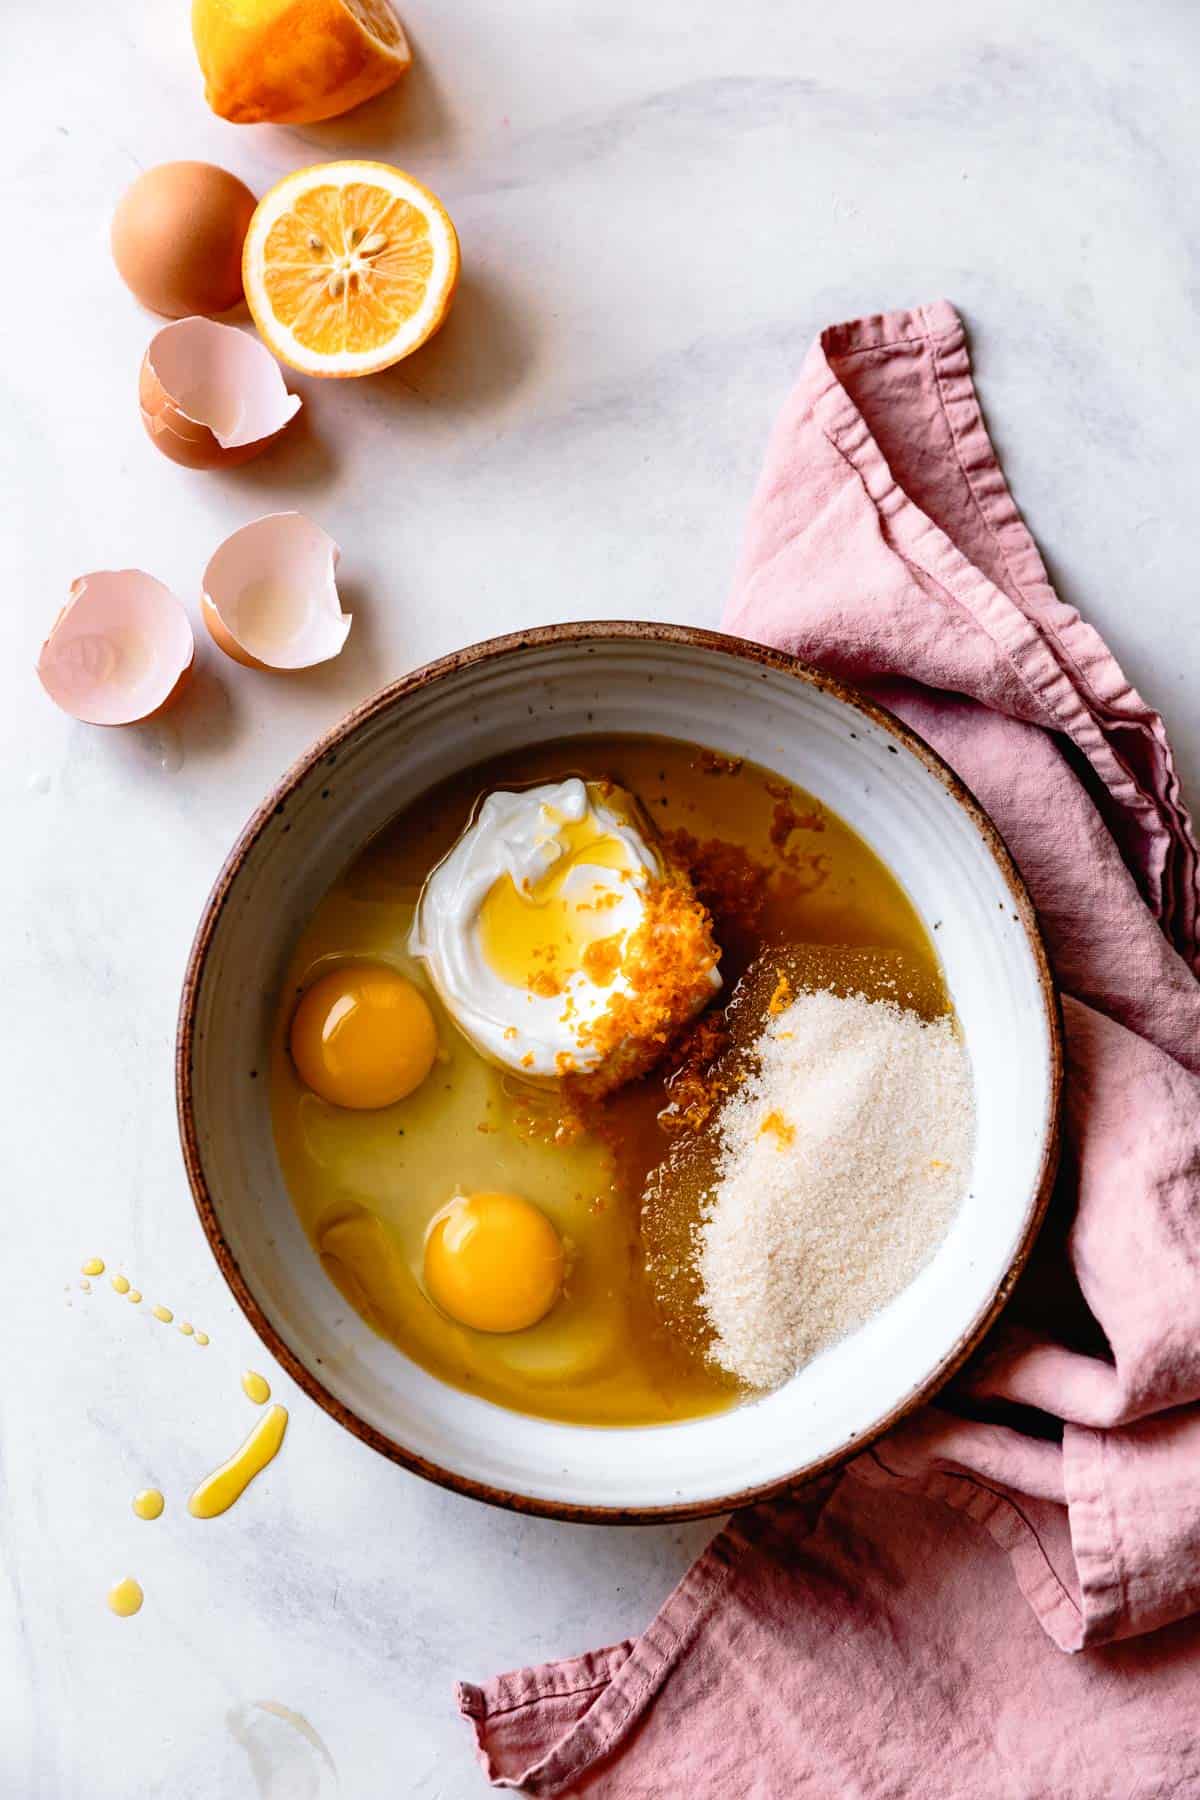 rhubarb cake ingredients: eggs, yogurt, sugar, lemon, and olive oil in a bowl